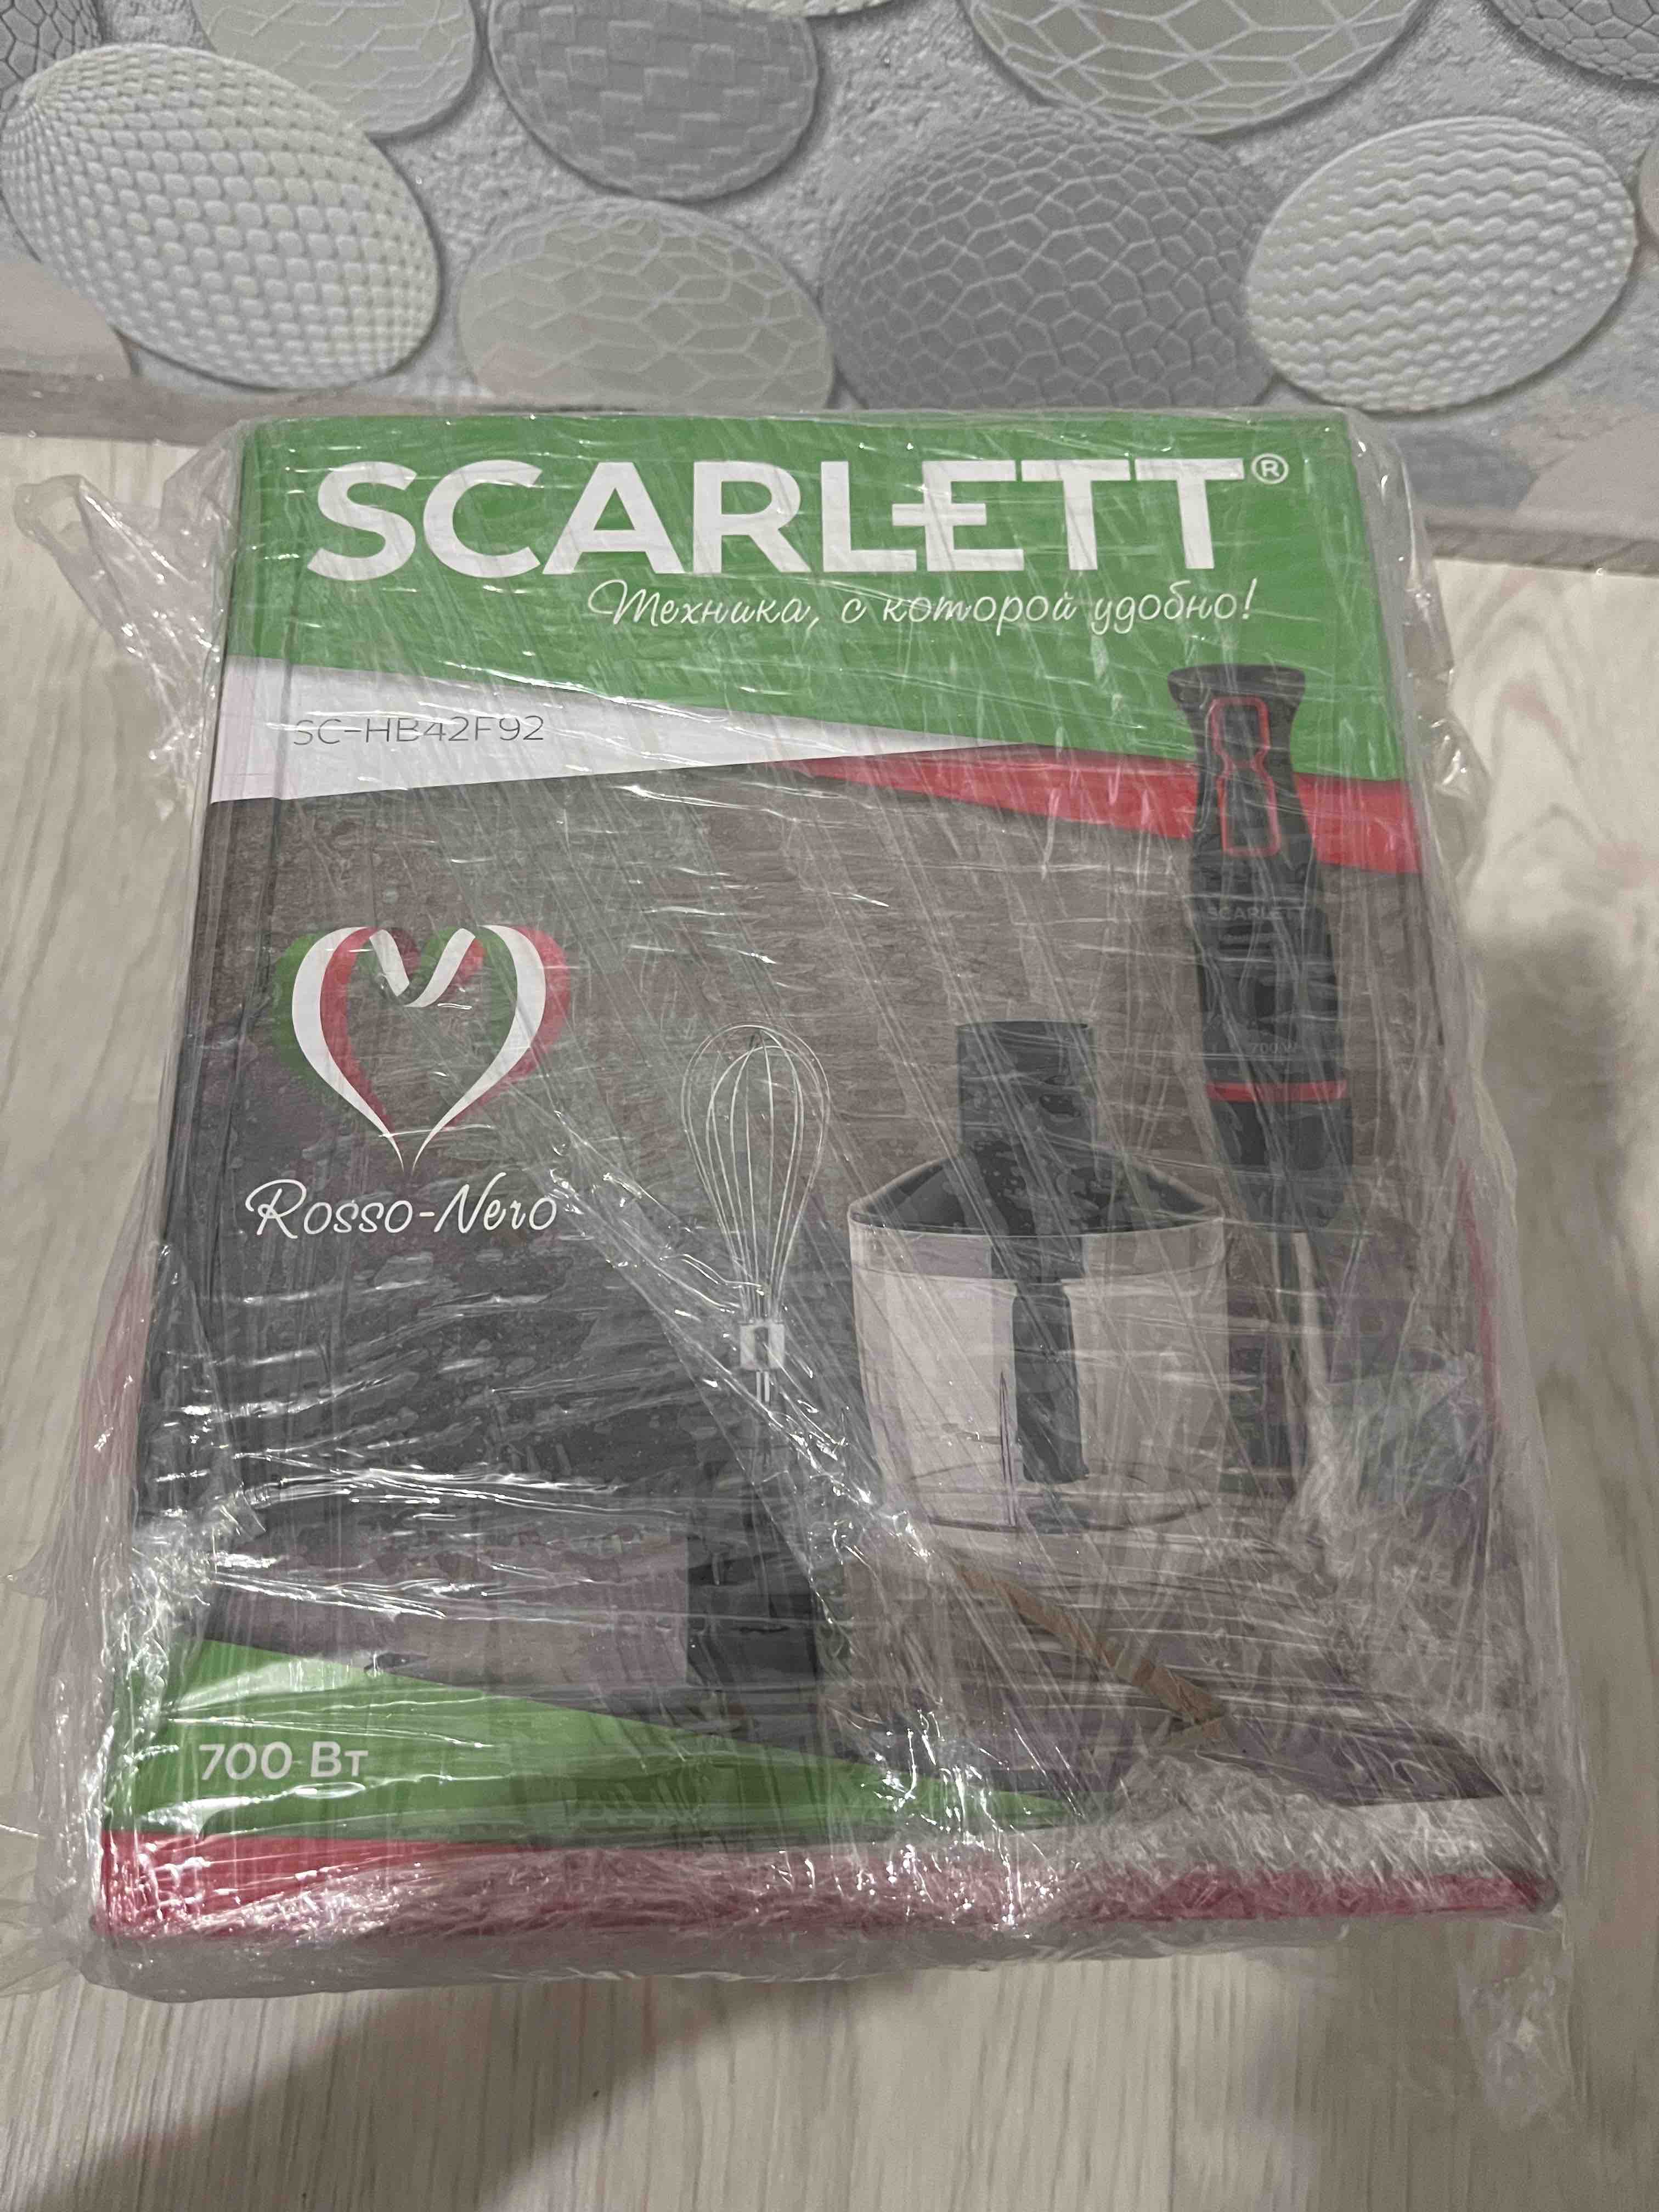  блендер Scarlett SC-HB42F92 Black,  , цены в .